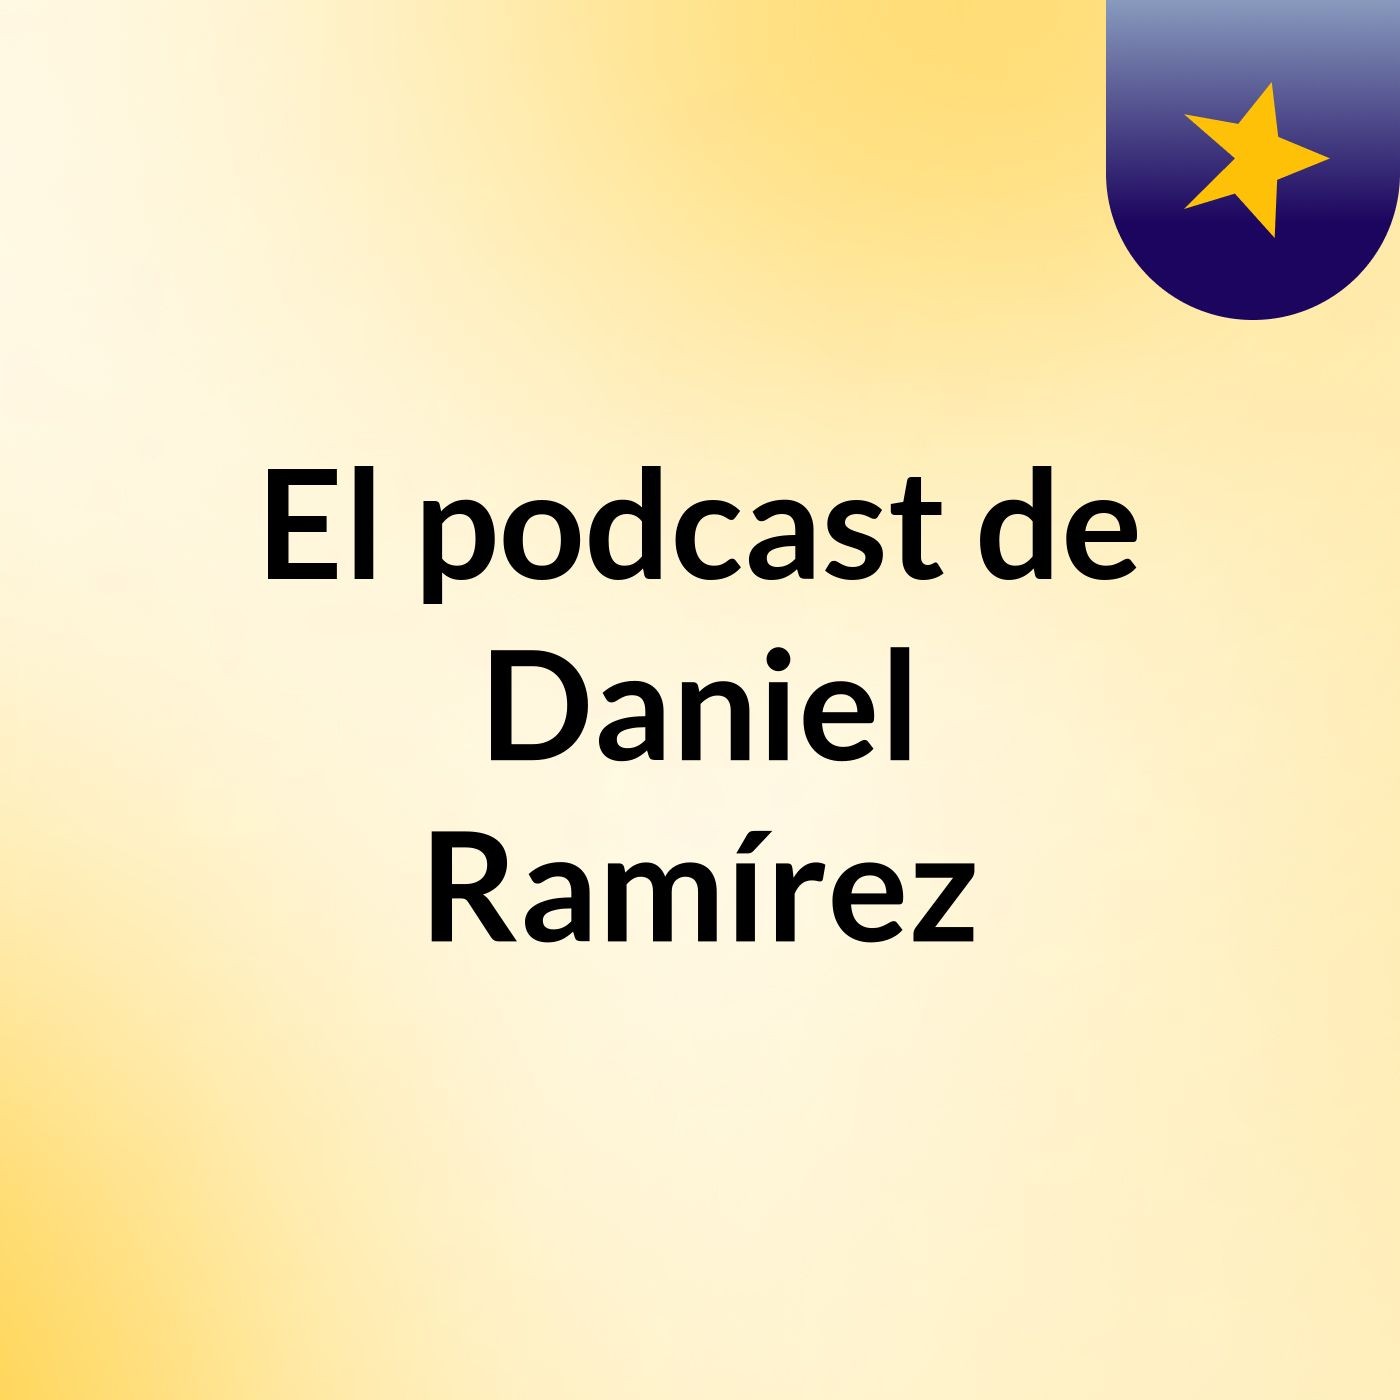 El podcast de Daniel Ramírez